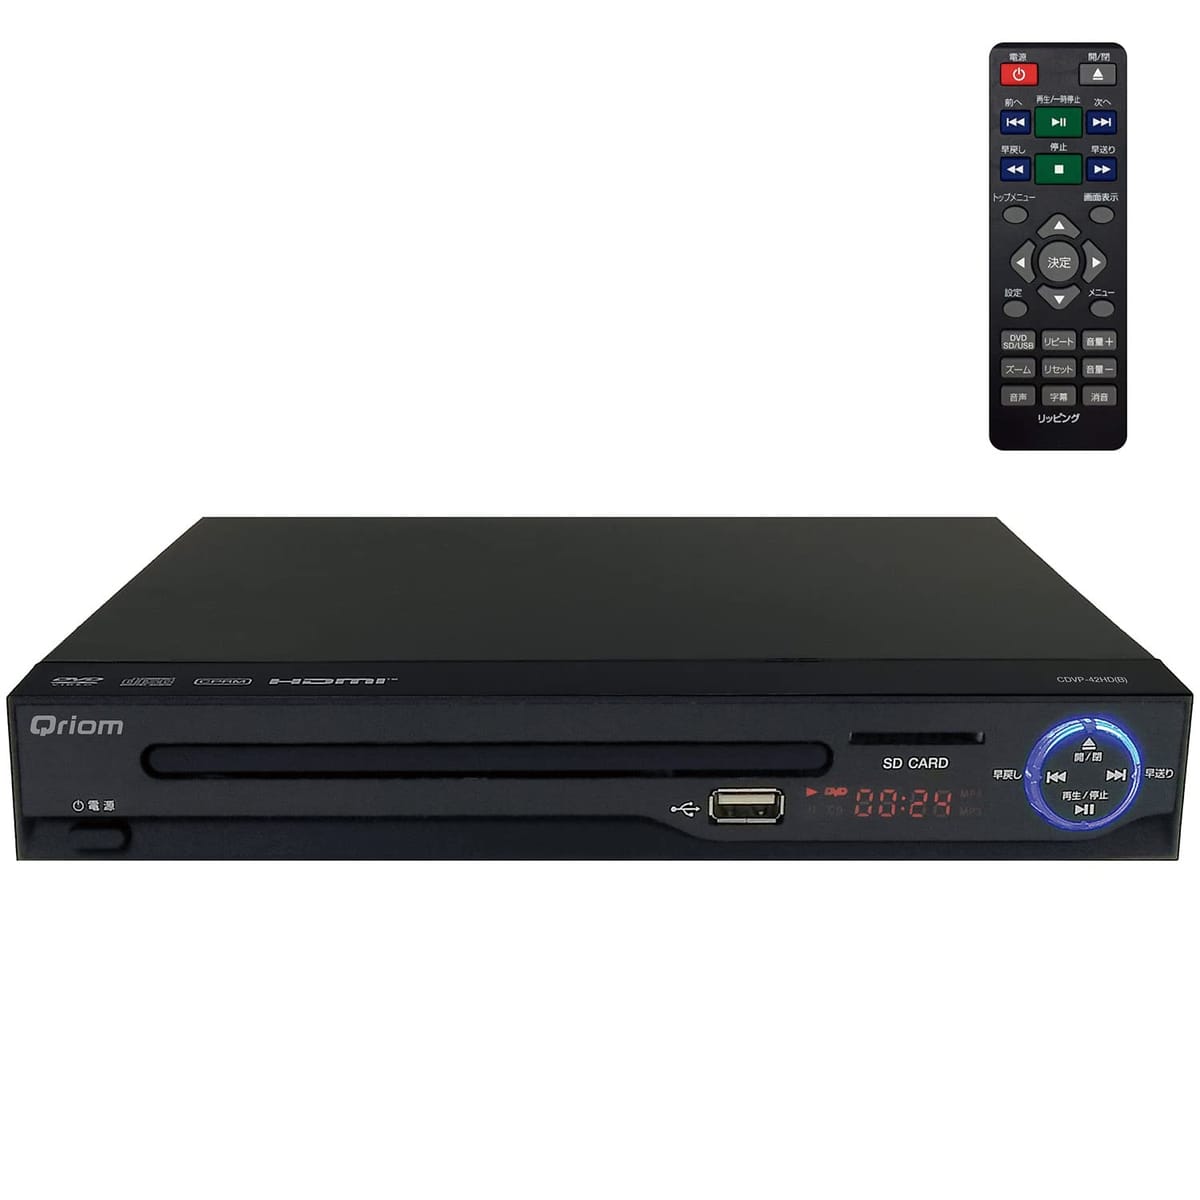 [山善] キュリオム DVDプレーヤー CPRM対応 再生専用 HDMIケーブル付き CDVP-42HD(B)